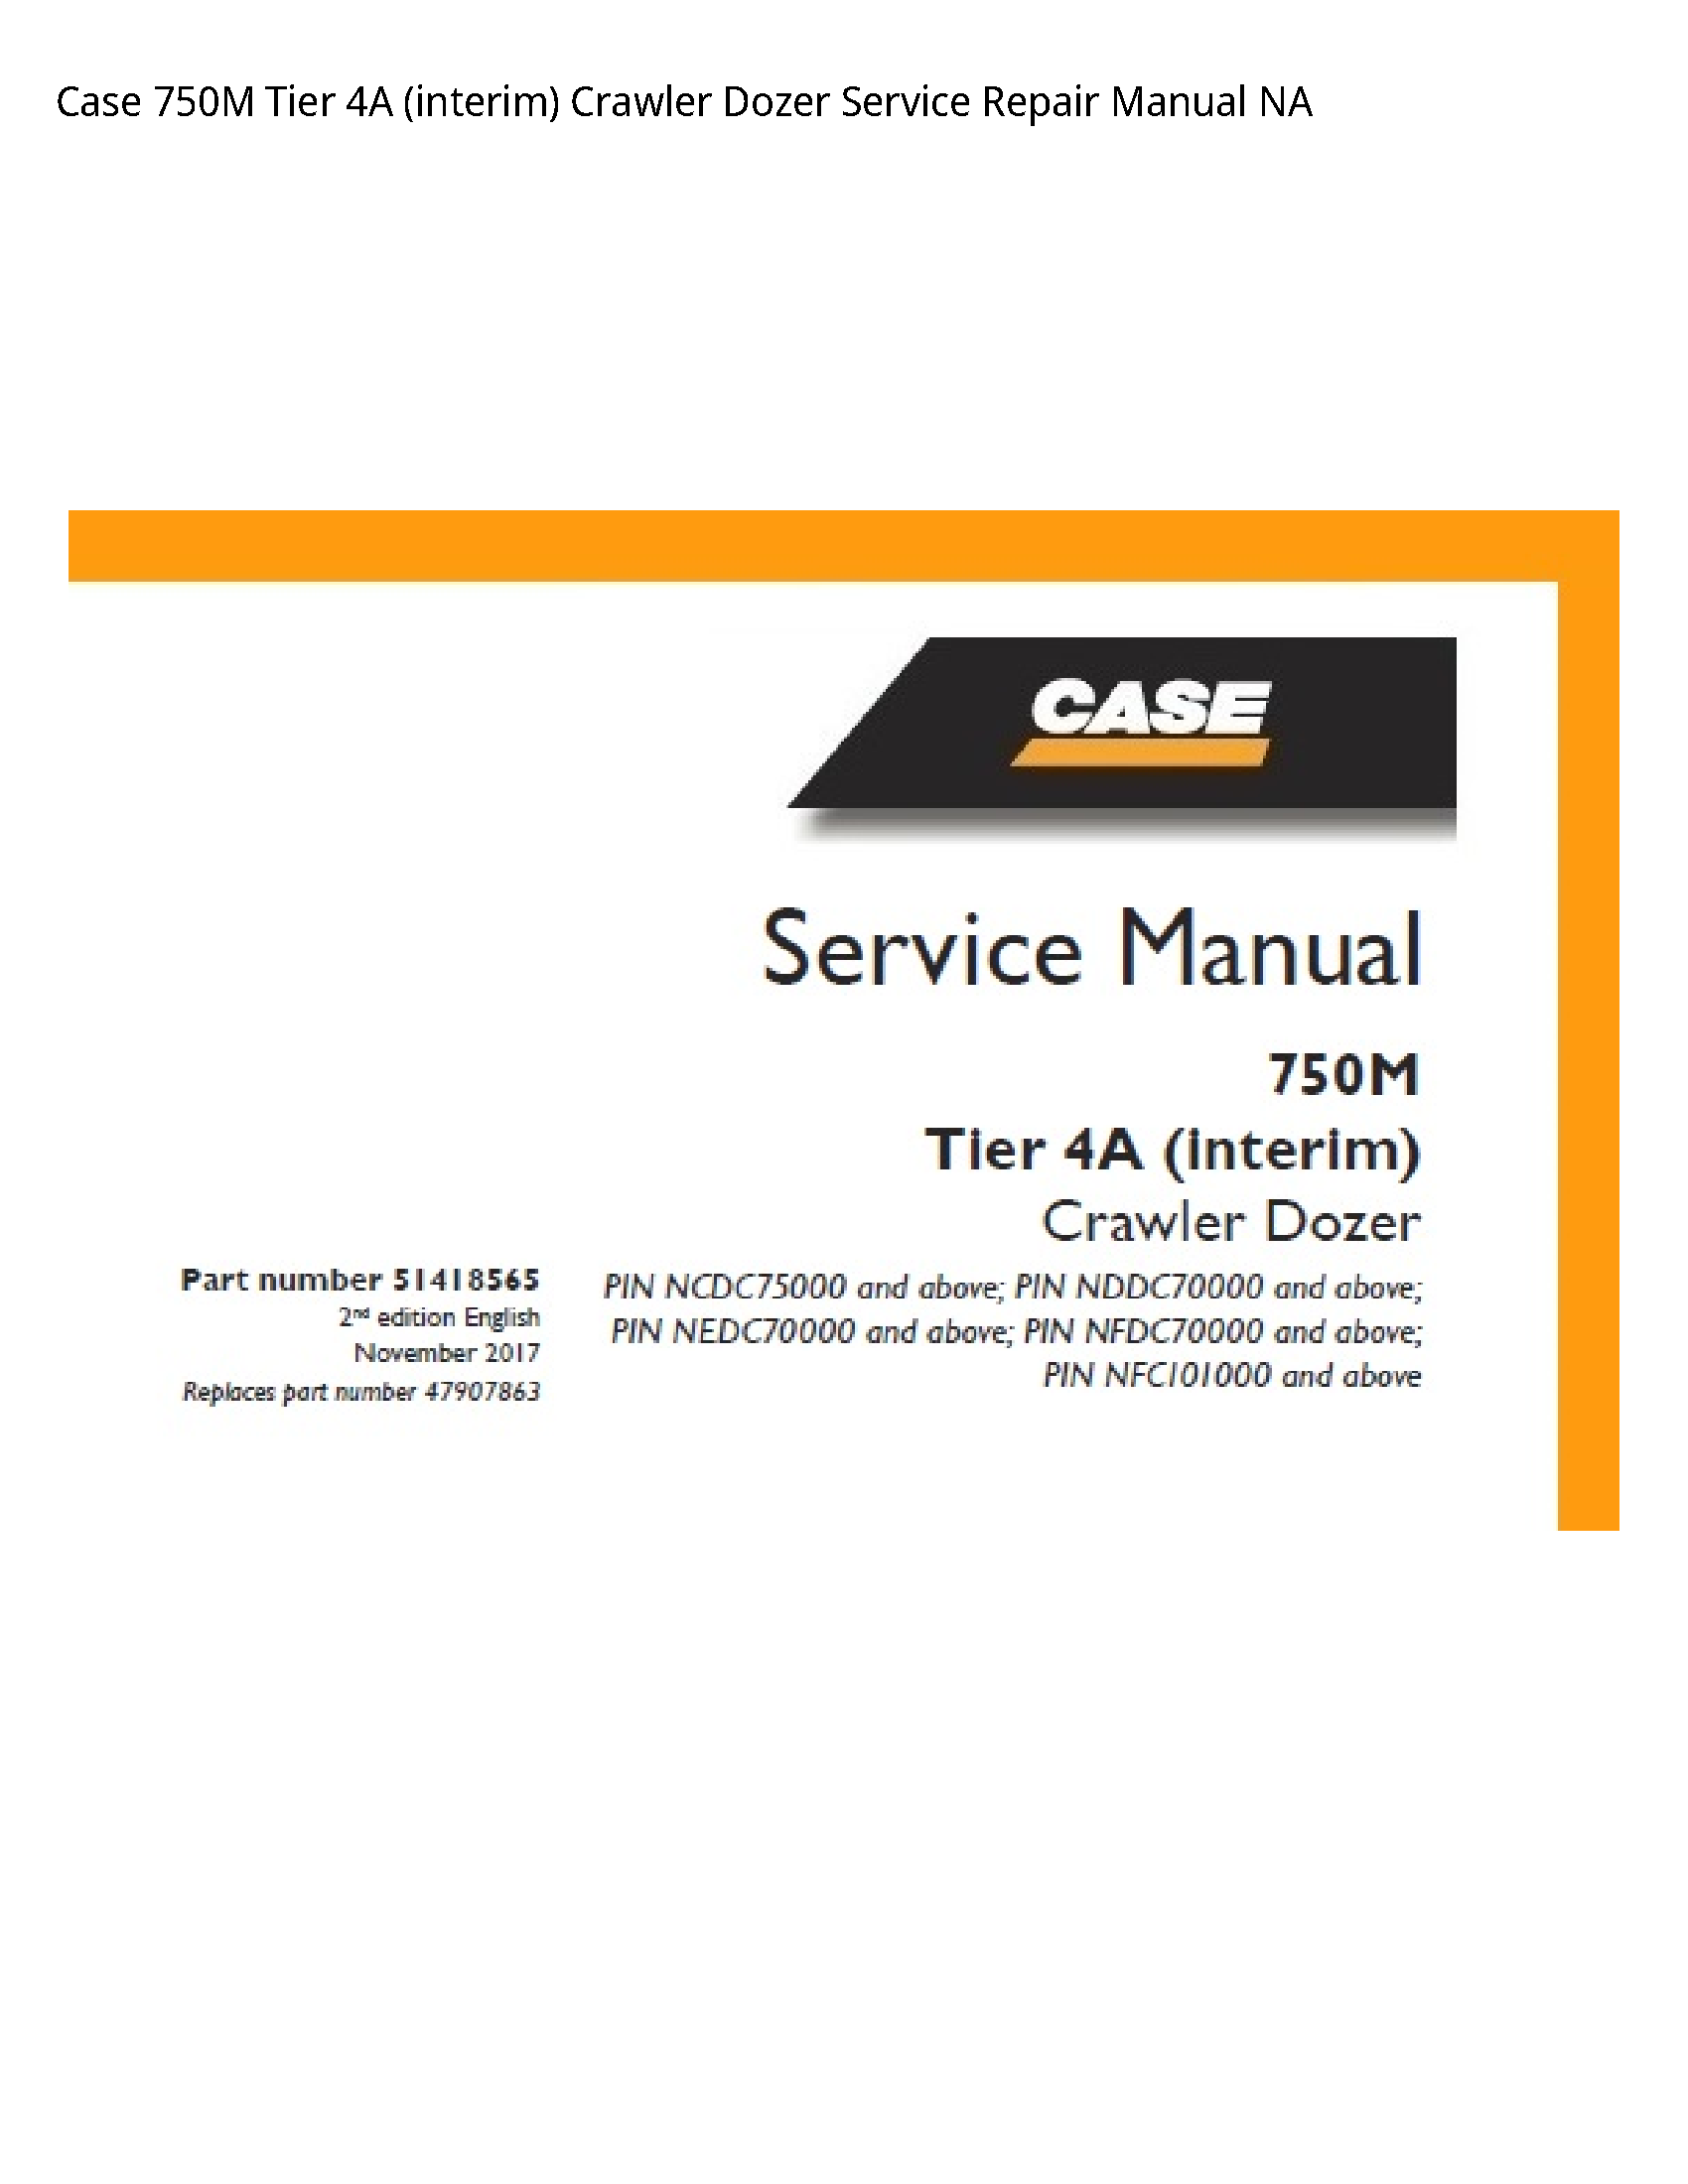 Case/Case IH 750M Tier (interim) Crawler Dozer manual